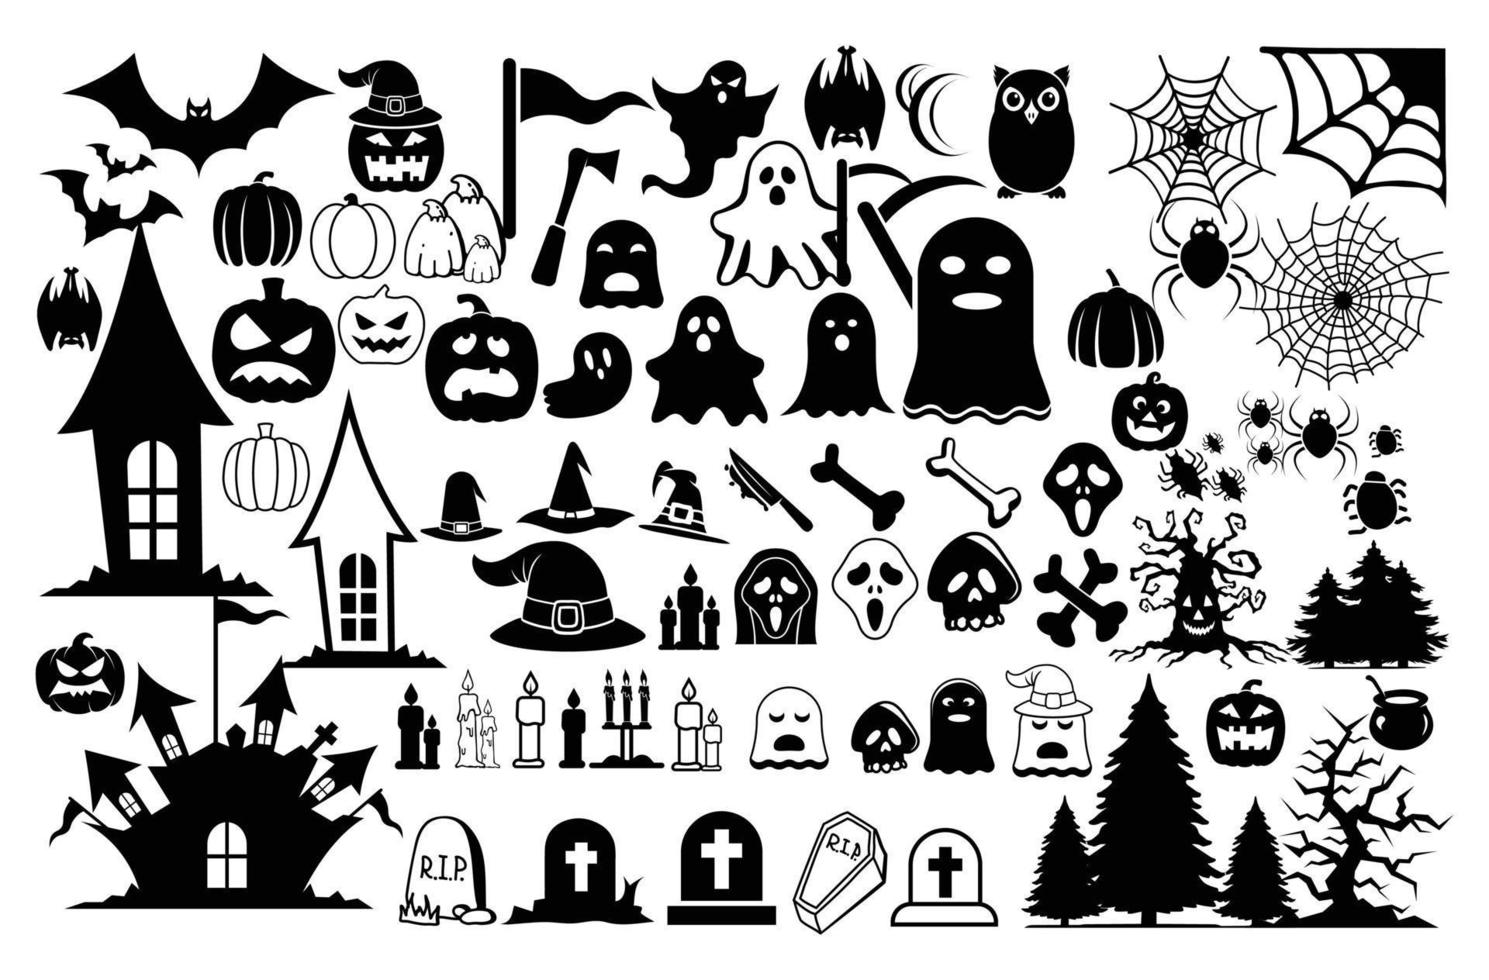 coleção de dias de halloween vector conjunto de ícones de halloween, design de bruxa, elementos assustadores e assustadores para decorações de halloween, coleção criativa de vetores livres de silhuetas de halloween.